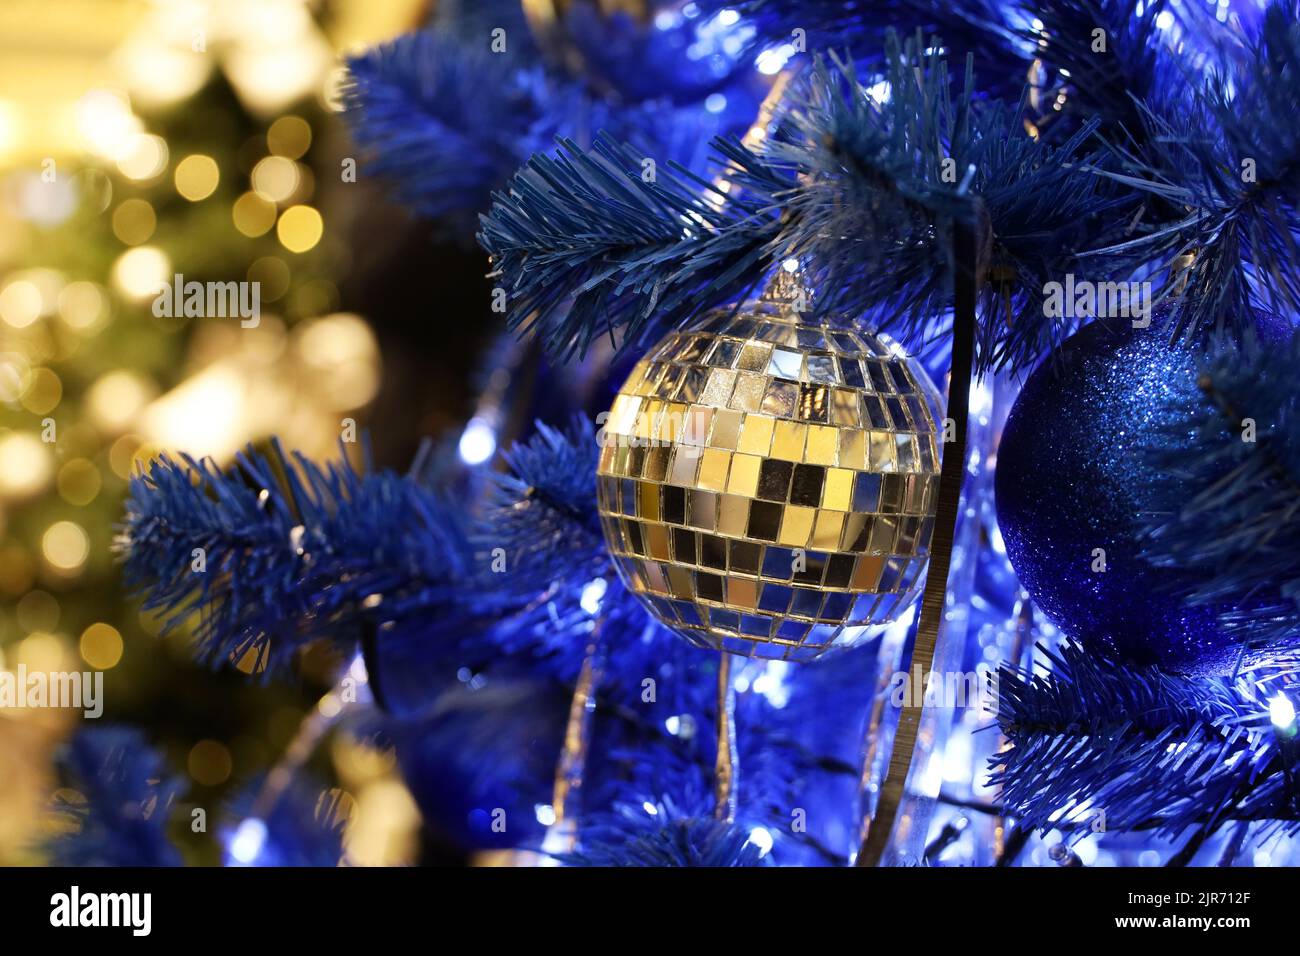 Árbol de Navidad con bolas azules y de espejo en un centro comercial sobre el fondo de luces festivas borrosas. Año Nuevo juguetes y decoraciones, vacaciones de invierno Foto de stock